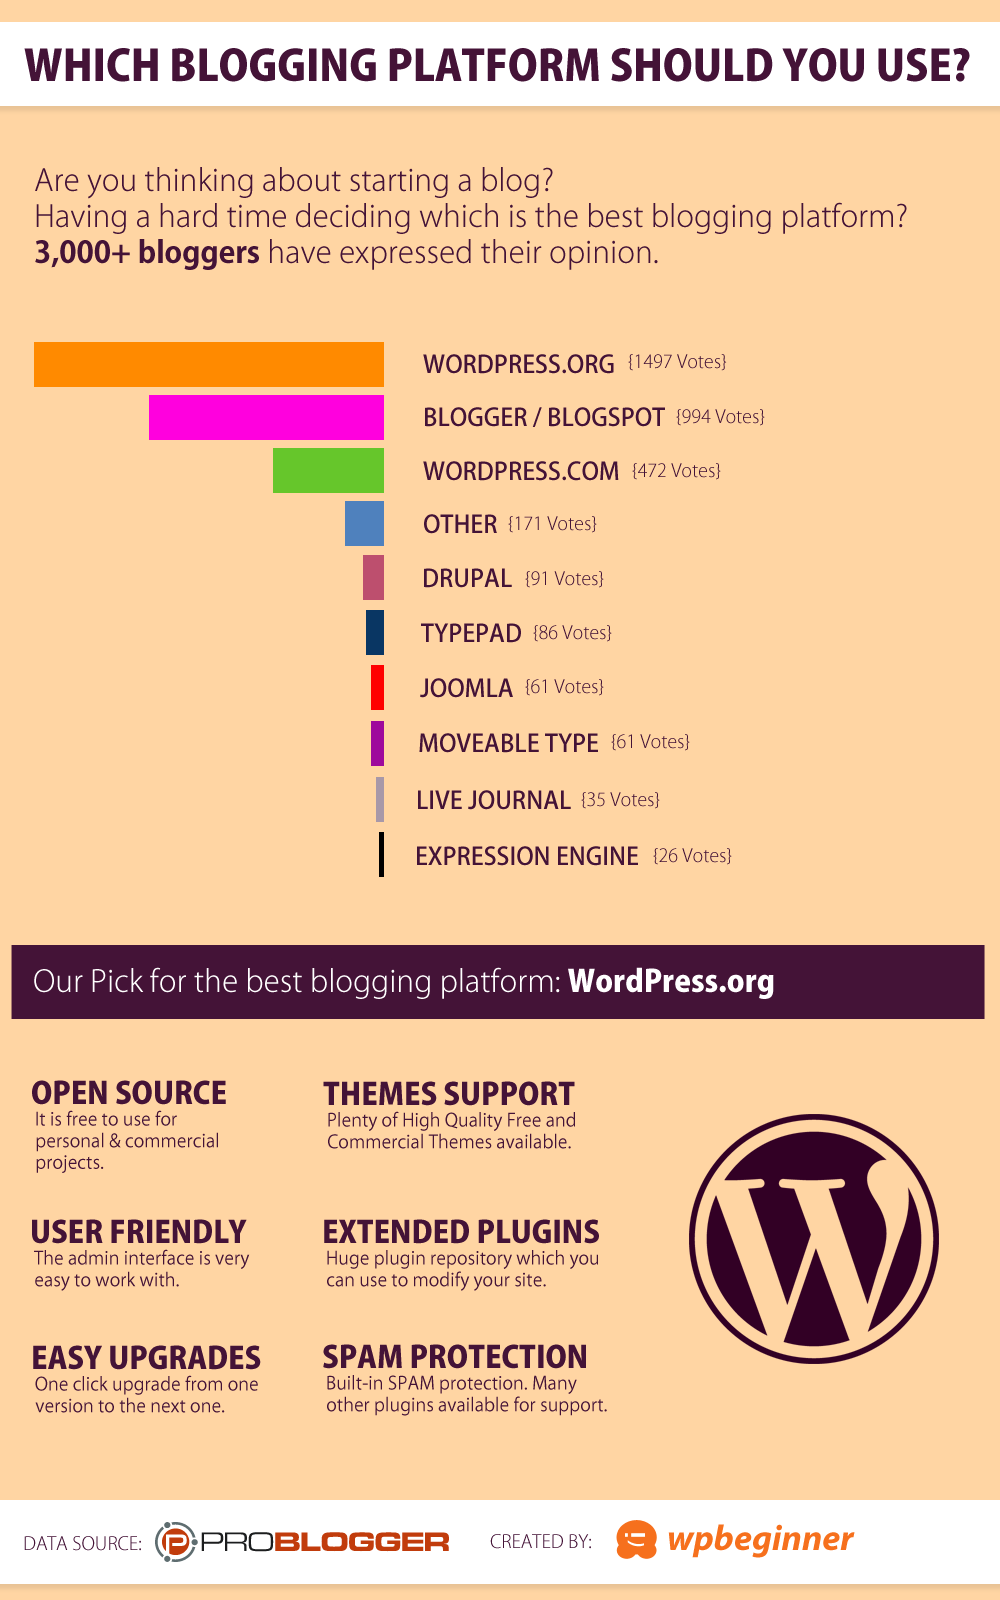 WordPress - The Best Blogging Platform